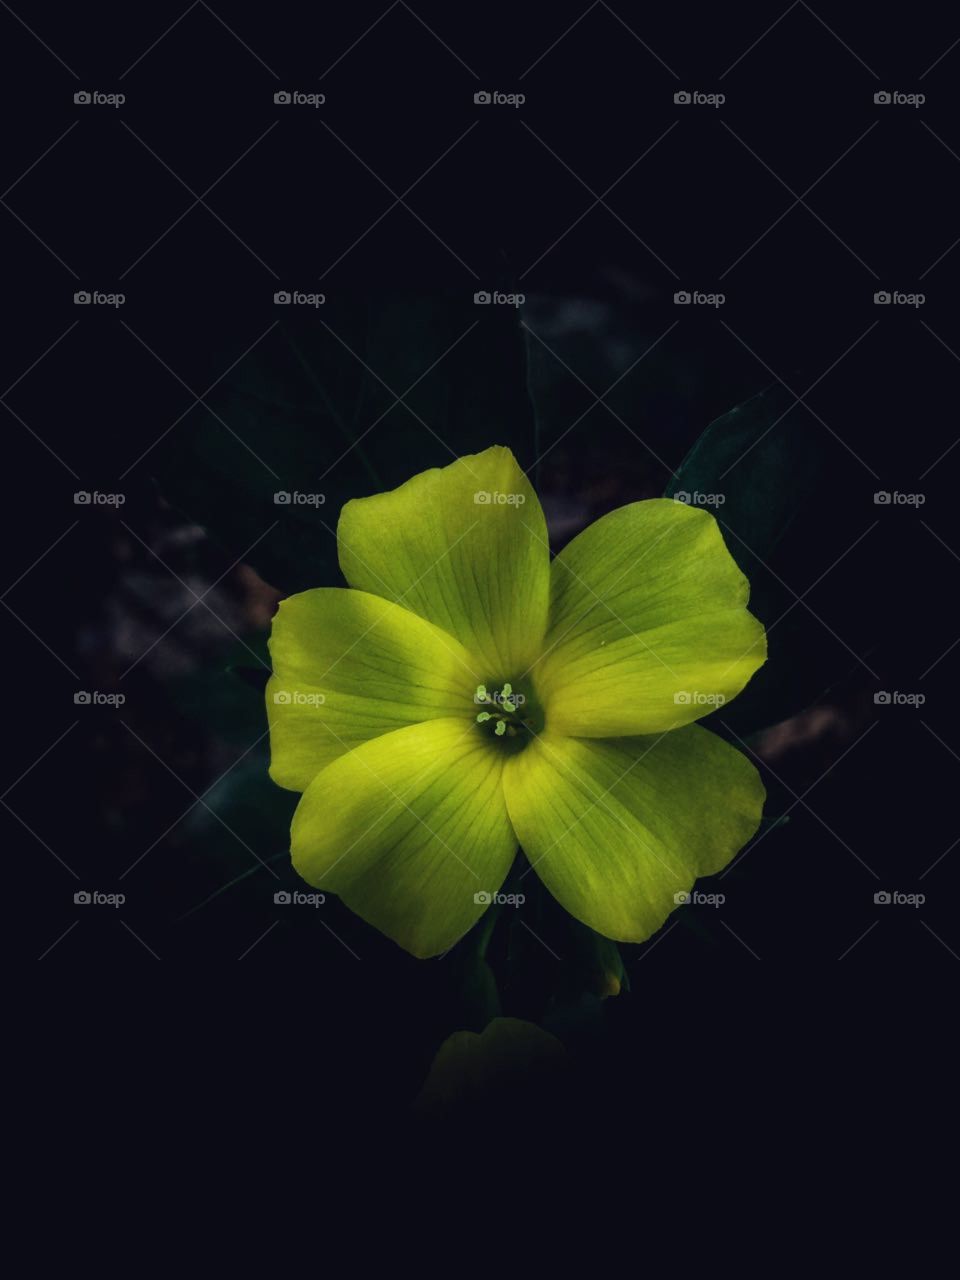 Yelloish green flower in a dark background